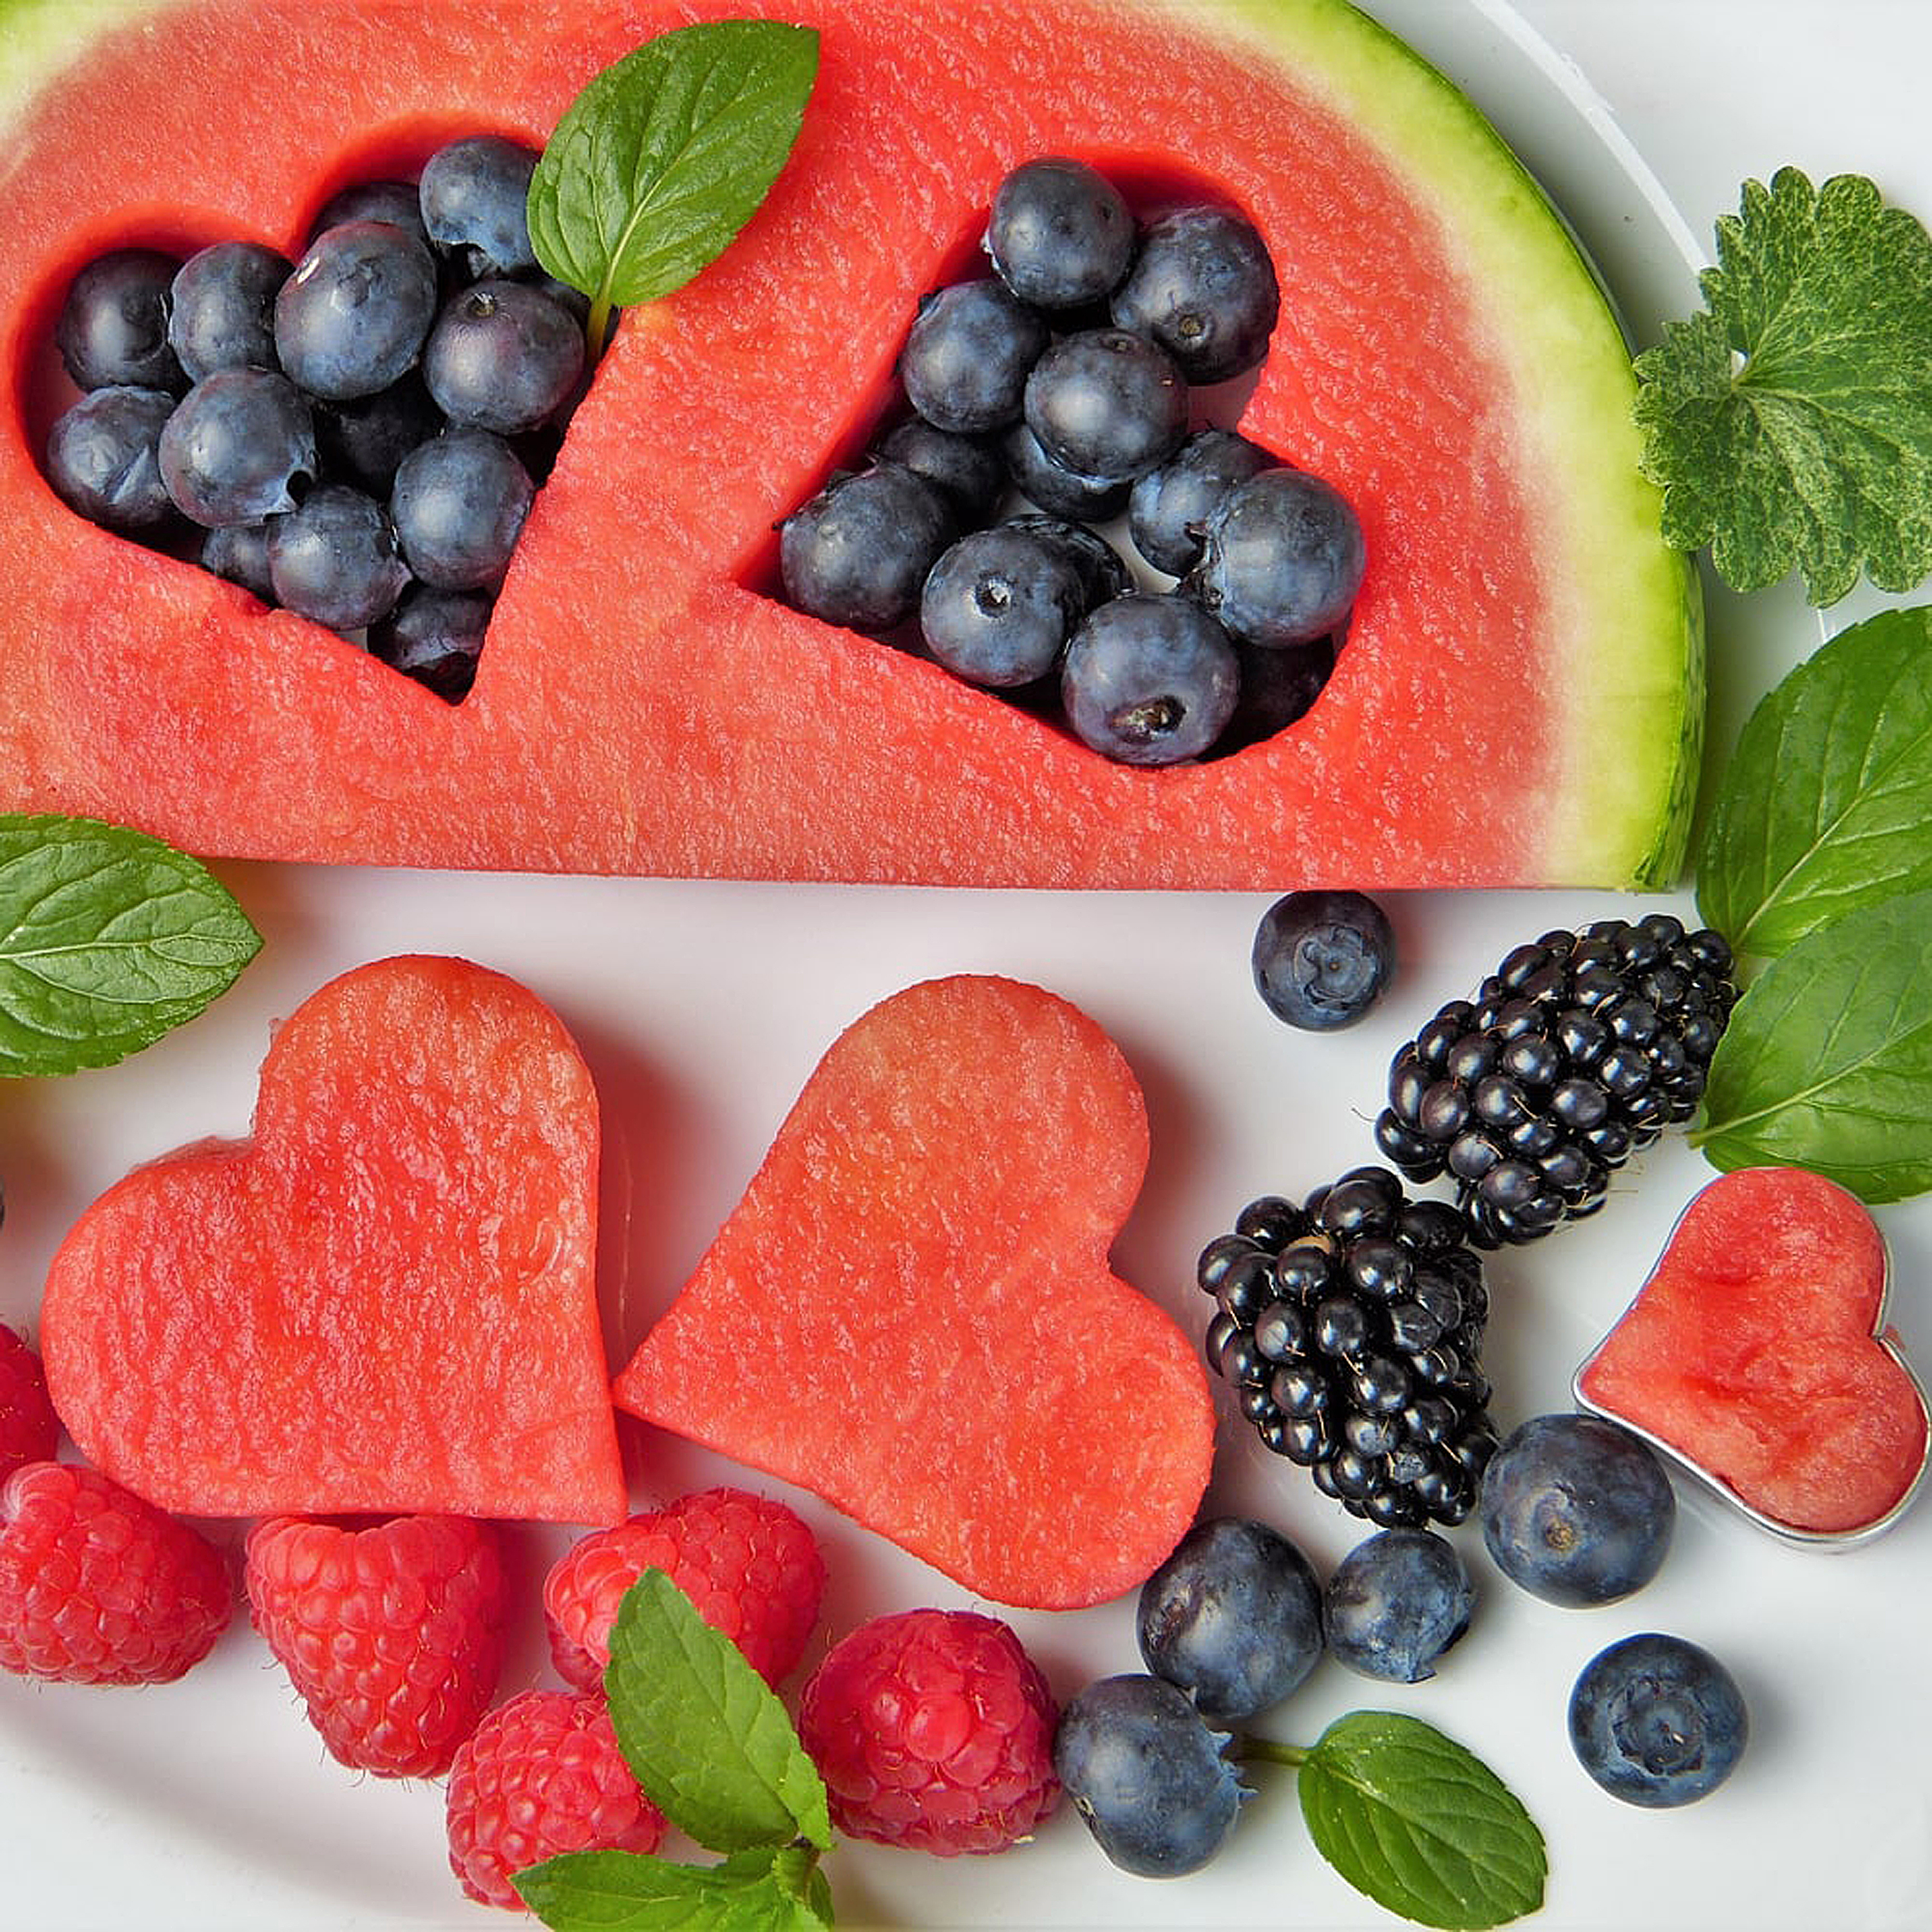 Saúde e nutrição - Coma fruta todos os dias